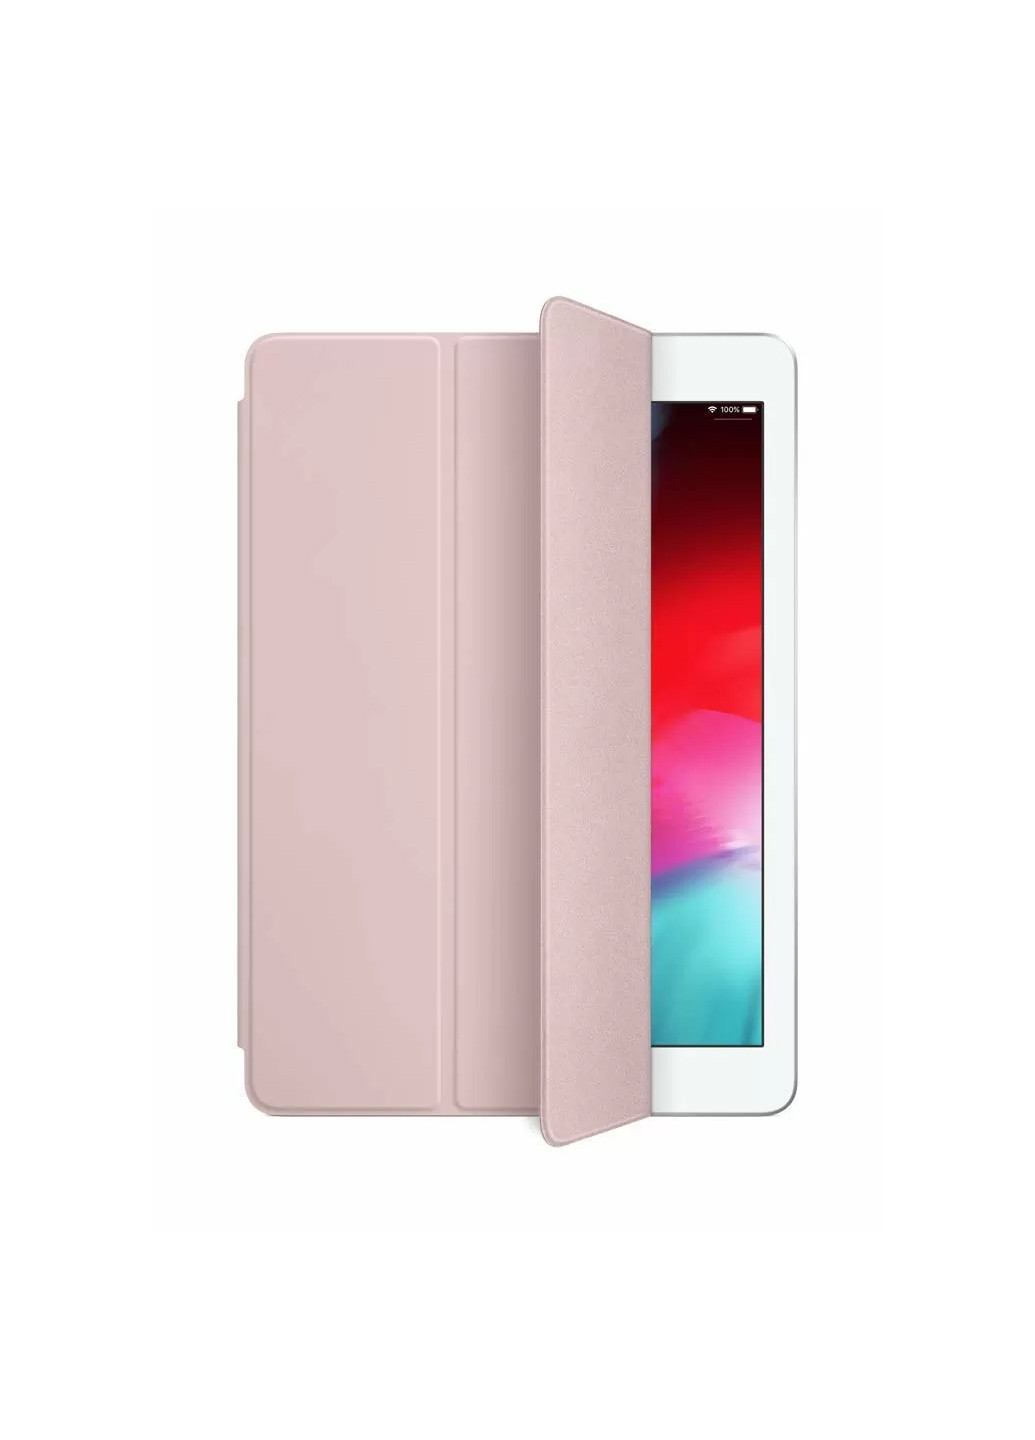 Чехол-книжка Smartcase для iPad 12.9 (2018) розовый кожаный защитный Pink Sand ARM (236979192)